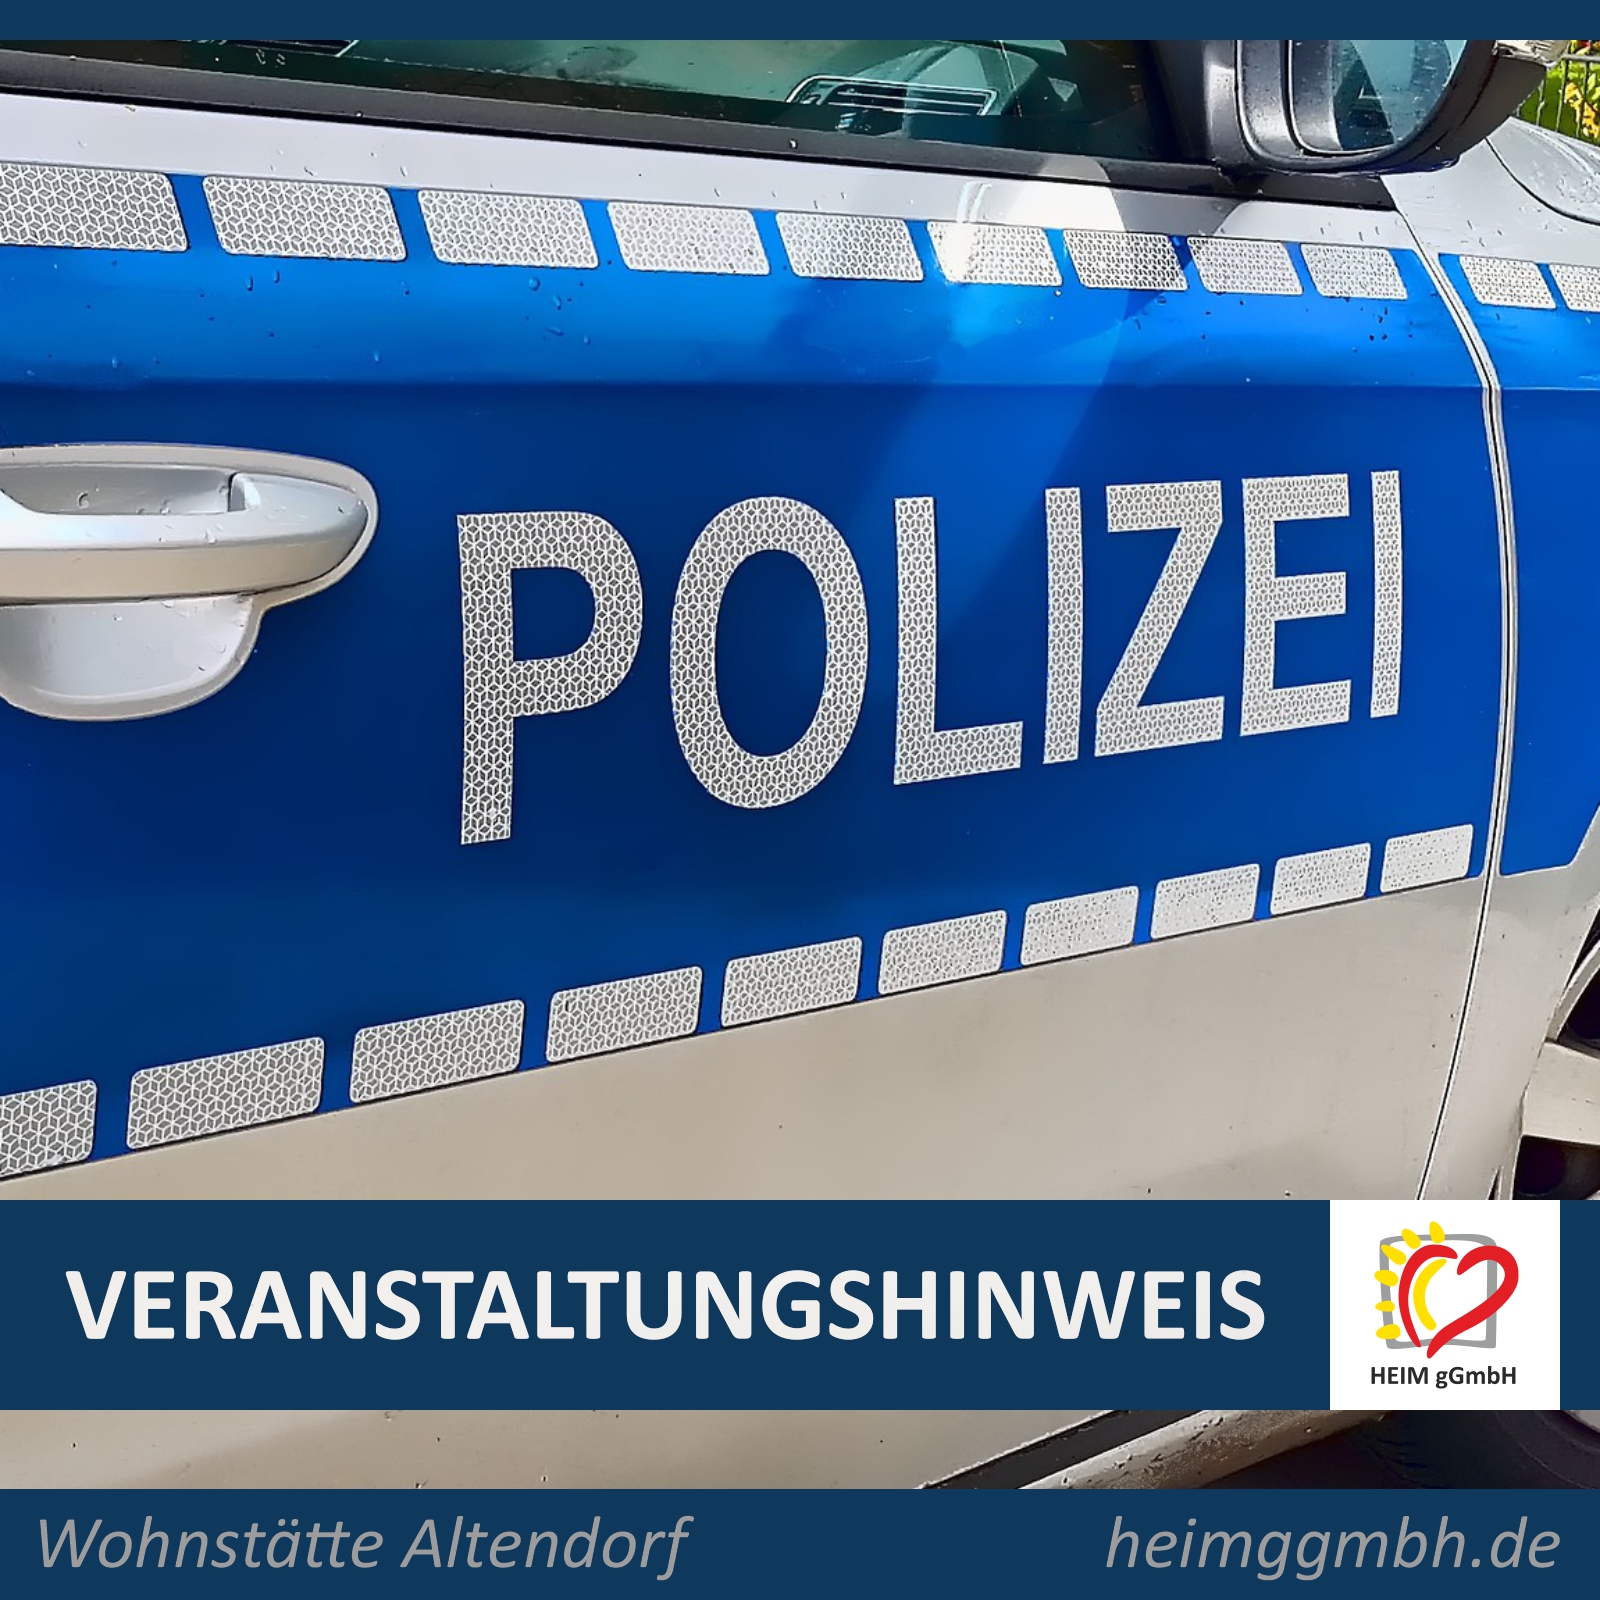 Veranstaltungshinweis Wohnstätte Altendorf - Die Bürgerpolizistin informiert über die Aufgaben, Kompetenzen und Erreichbarkeiten in unserem Betreuungsbereich.